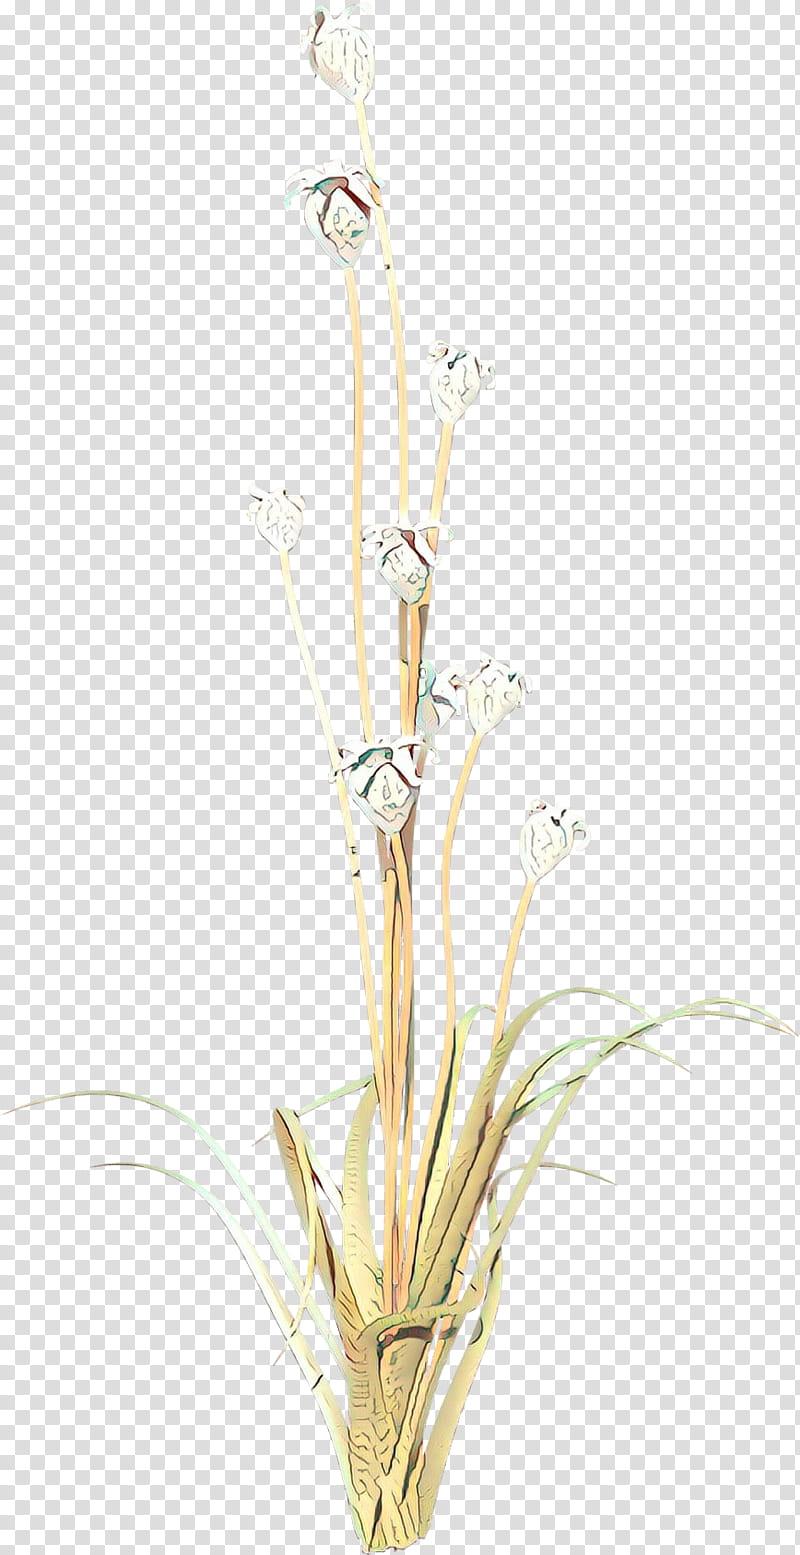 Flowers, Twig, Plant Stem, Grasses, Plants, Grass Family, Alismatales, Cut Flowers transparent background PNG clipart